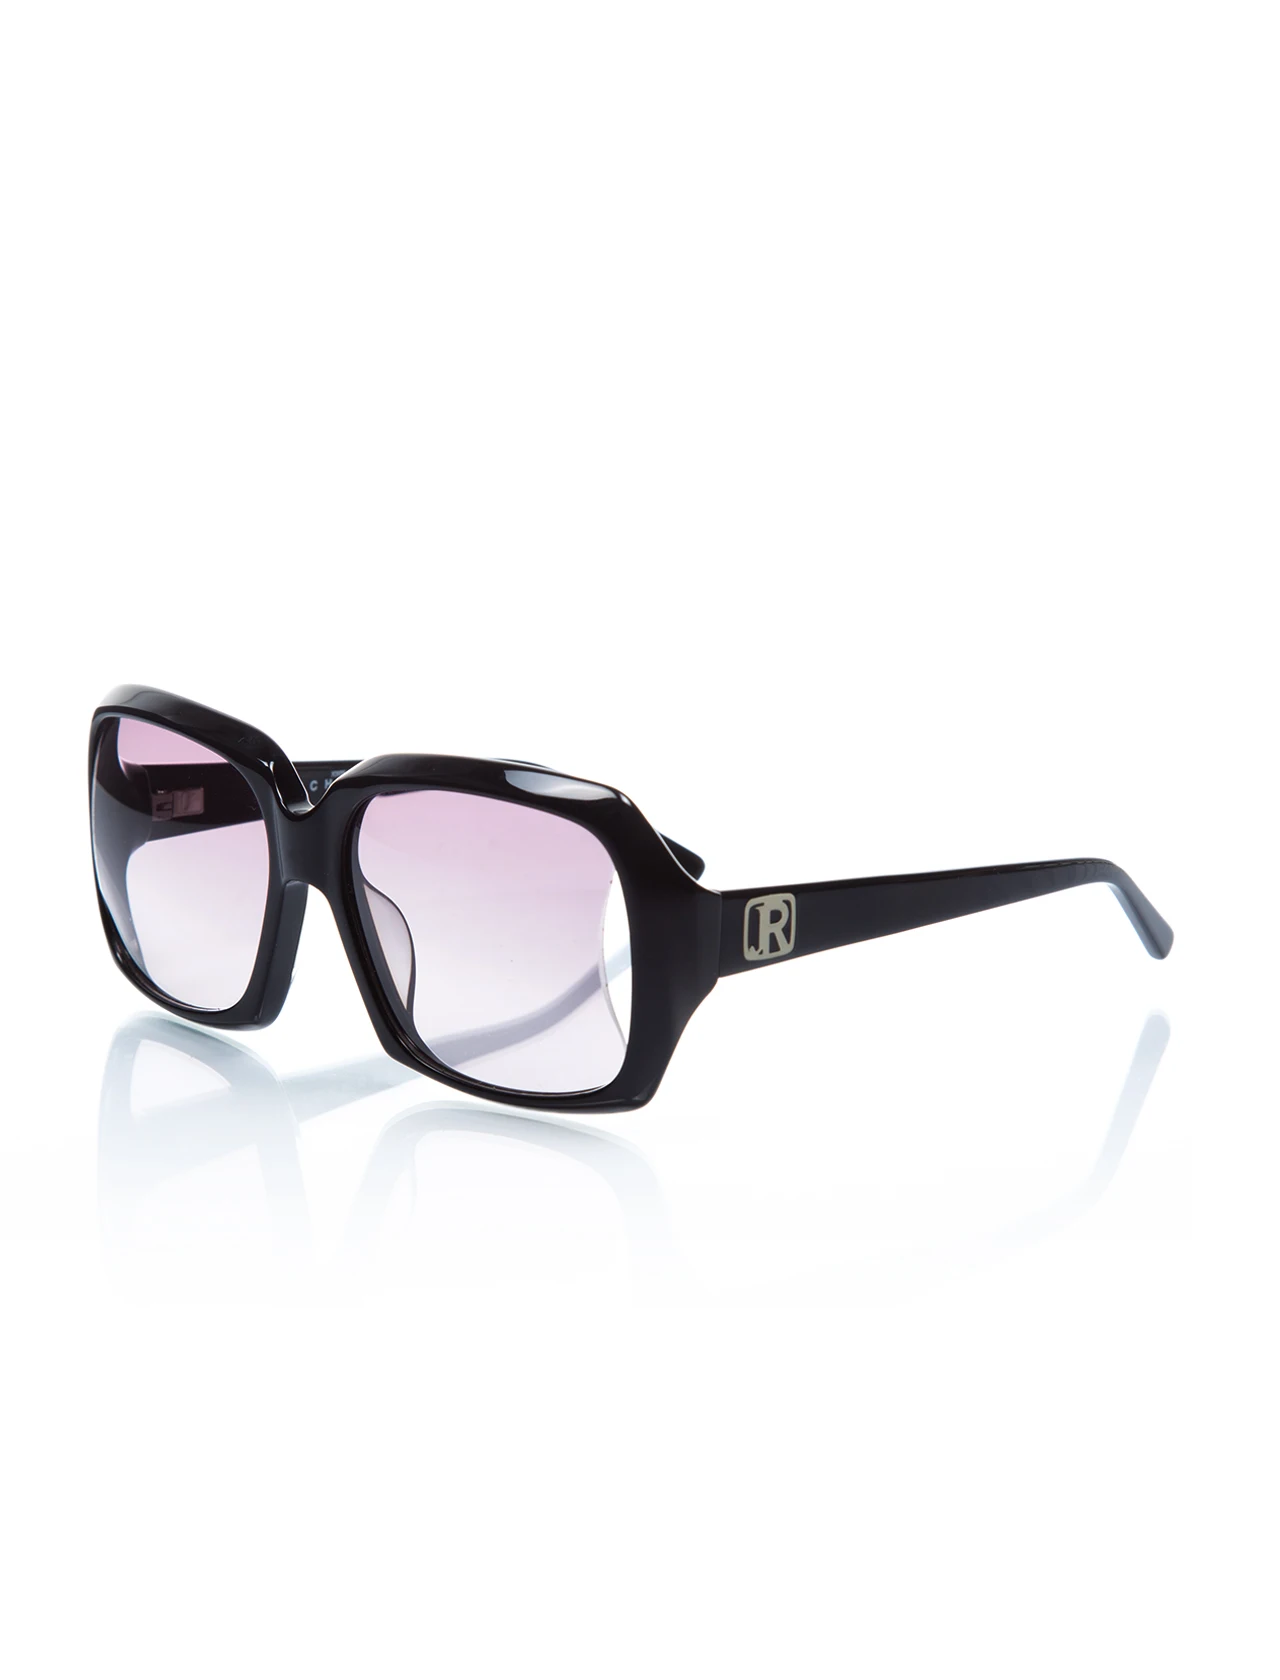 

Women's sunglasses jr 635 01 bone black organic square square 55-16-130 john richmond